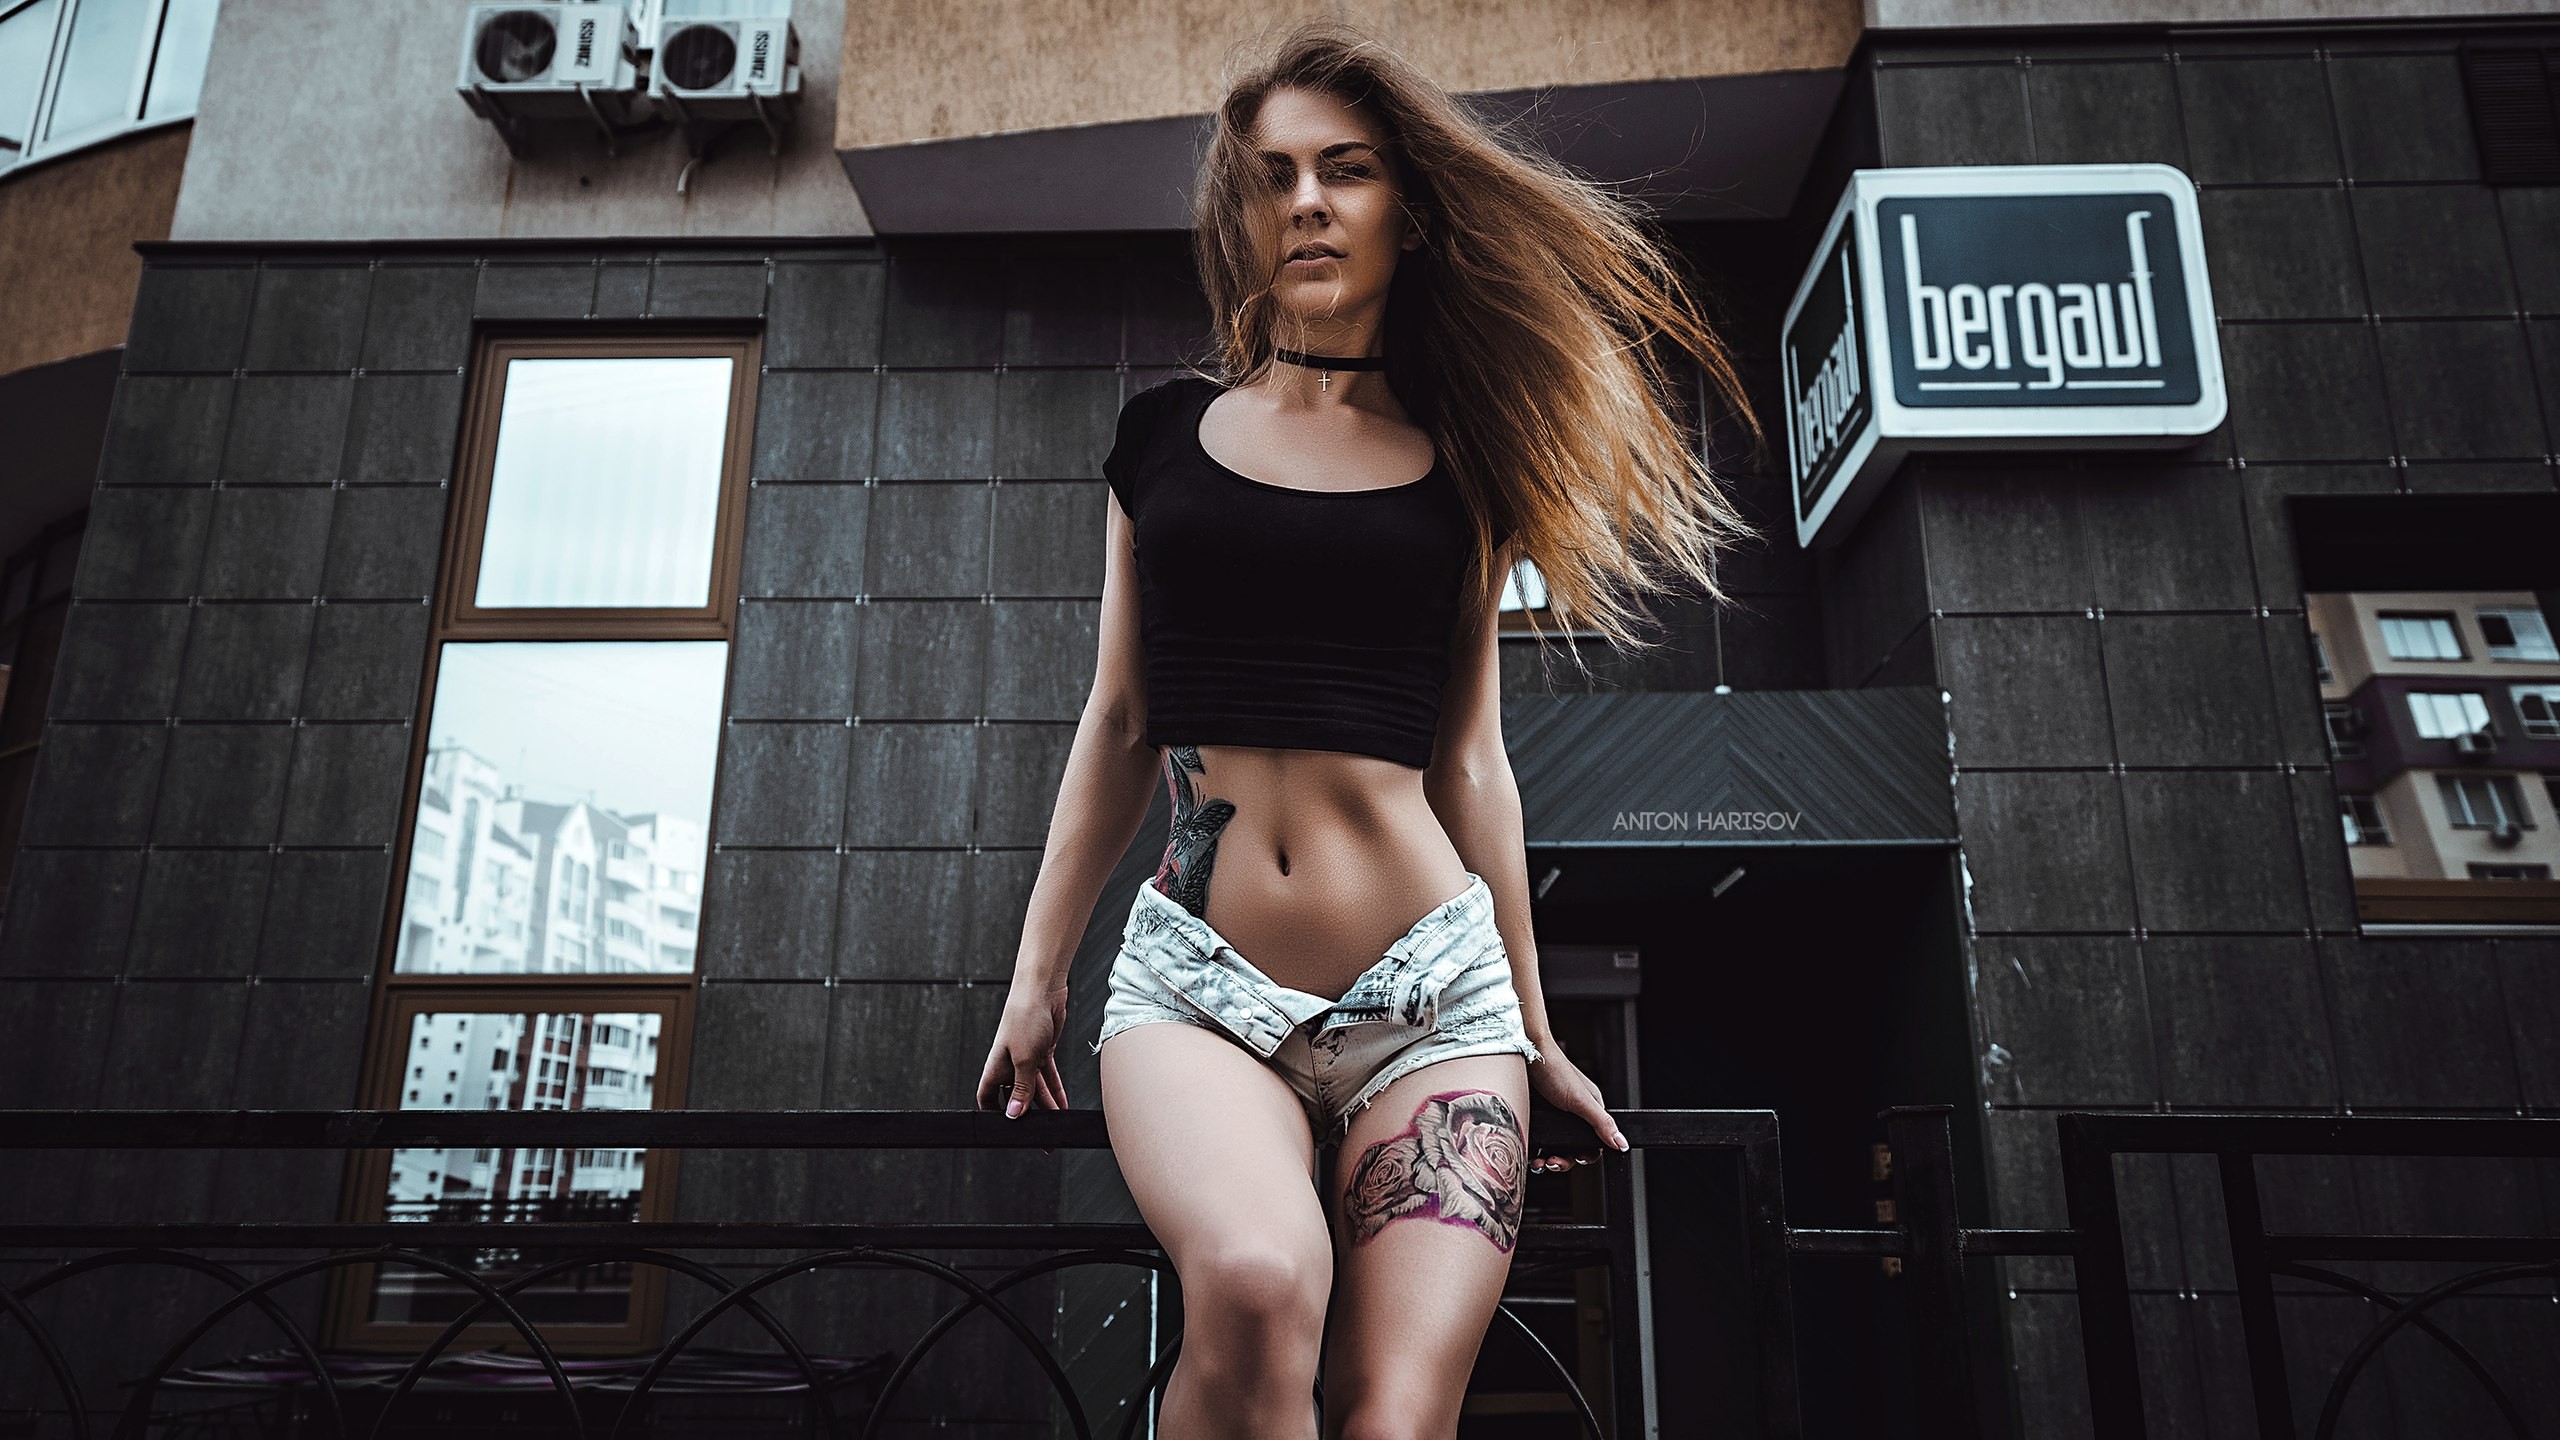 People 2560x1440 Yulia Berr women portrait brunette skinny belly tattoo jean shorts short shorts choker Anton Harisov watermarked